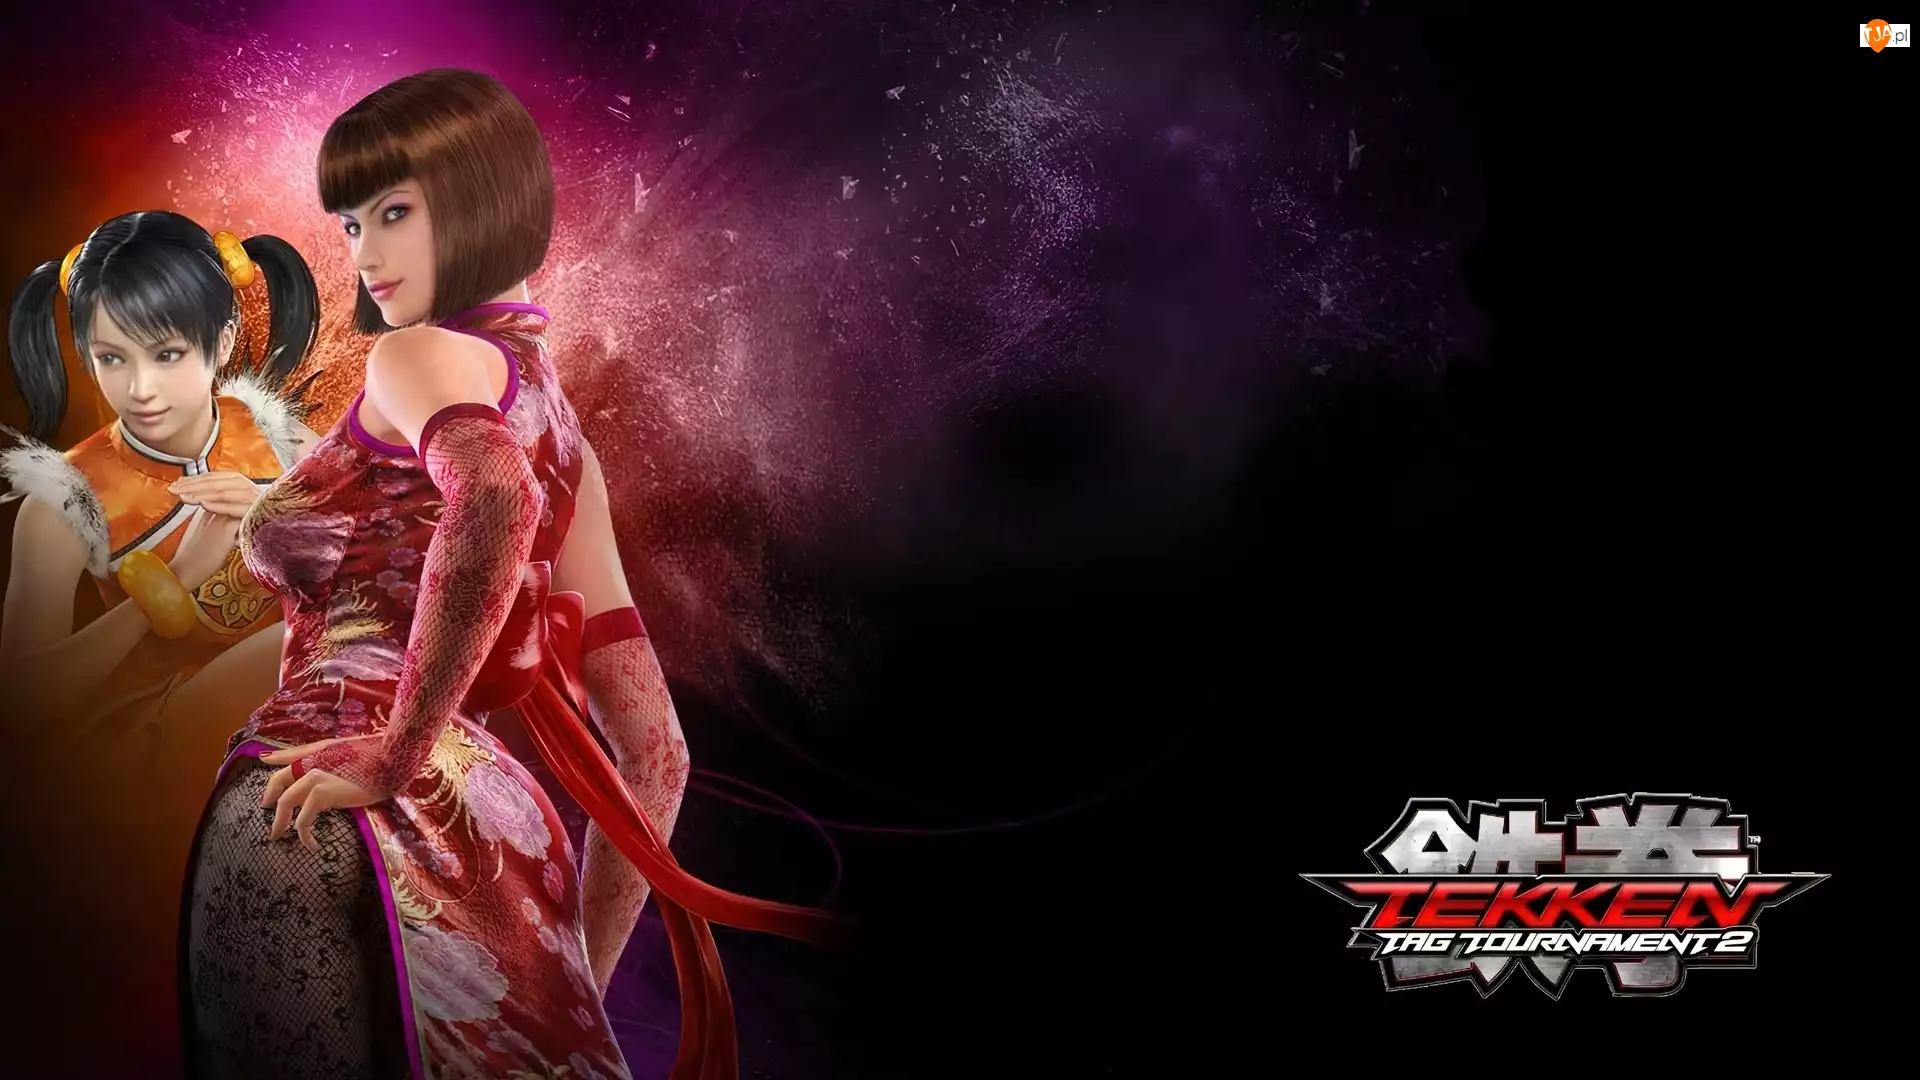 Ling Xiaoyu, Kobiety, Tekken Tag Tournament 2, Anna Williams